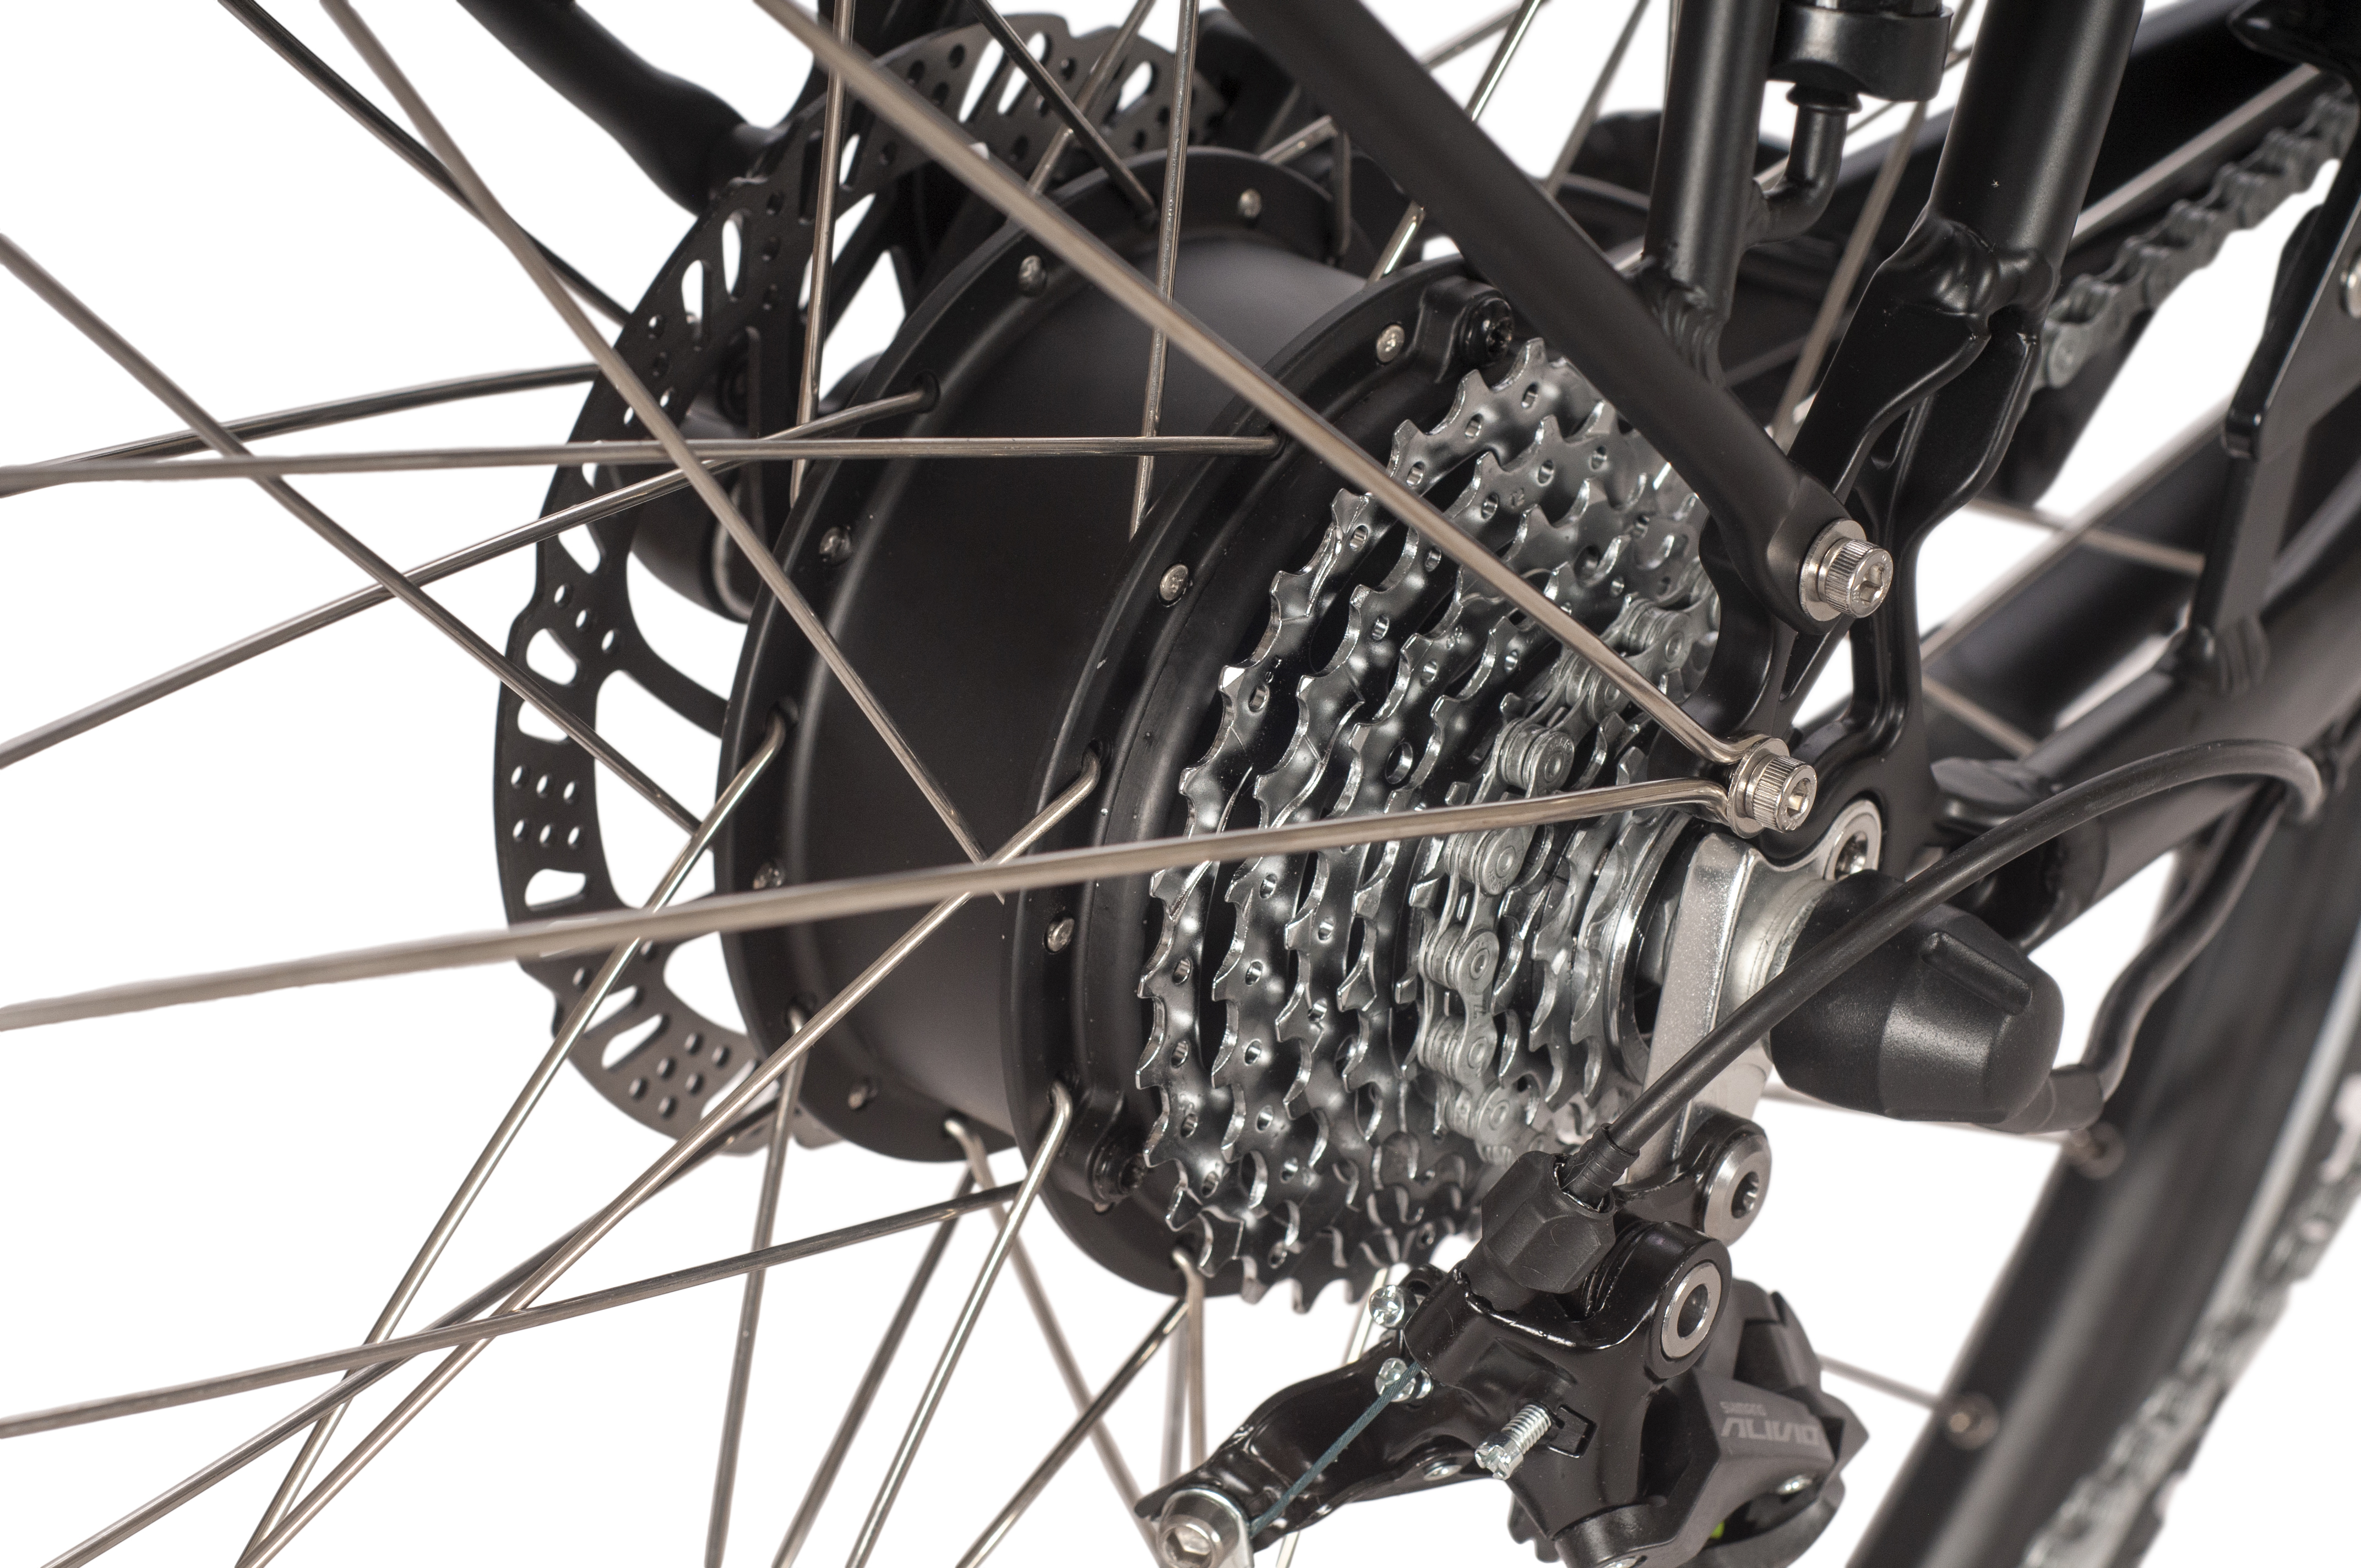 SAXXX X-Road 5.0 E-Trekkingbike 9 Gang Kettenschaltung Hinterradmotor 2. Wahl gebraucht Diamant schwarz matt